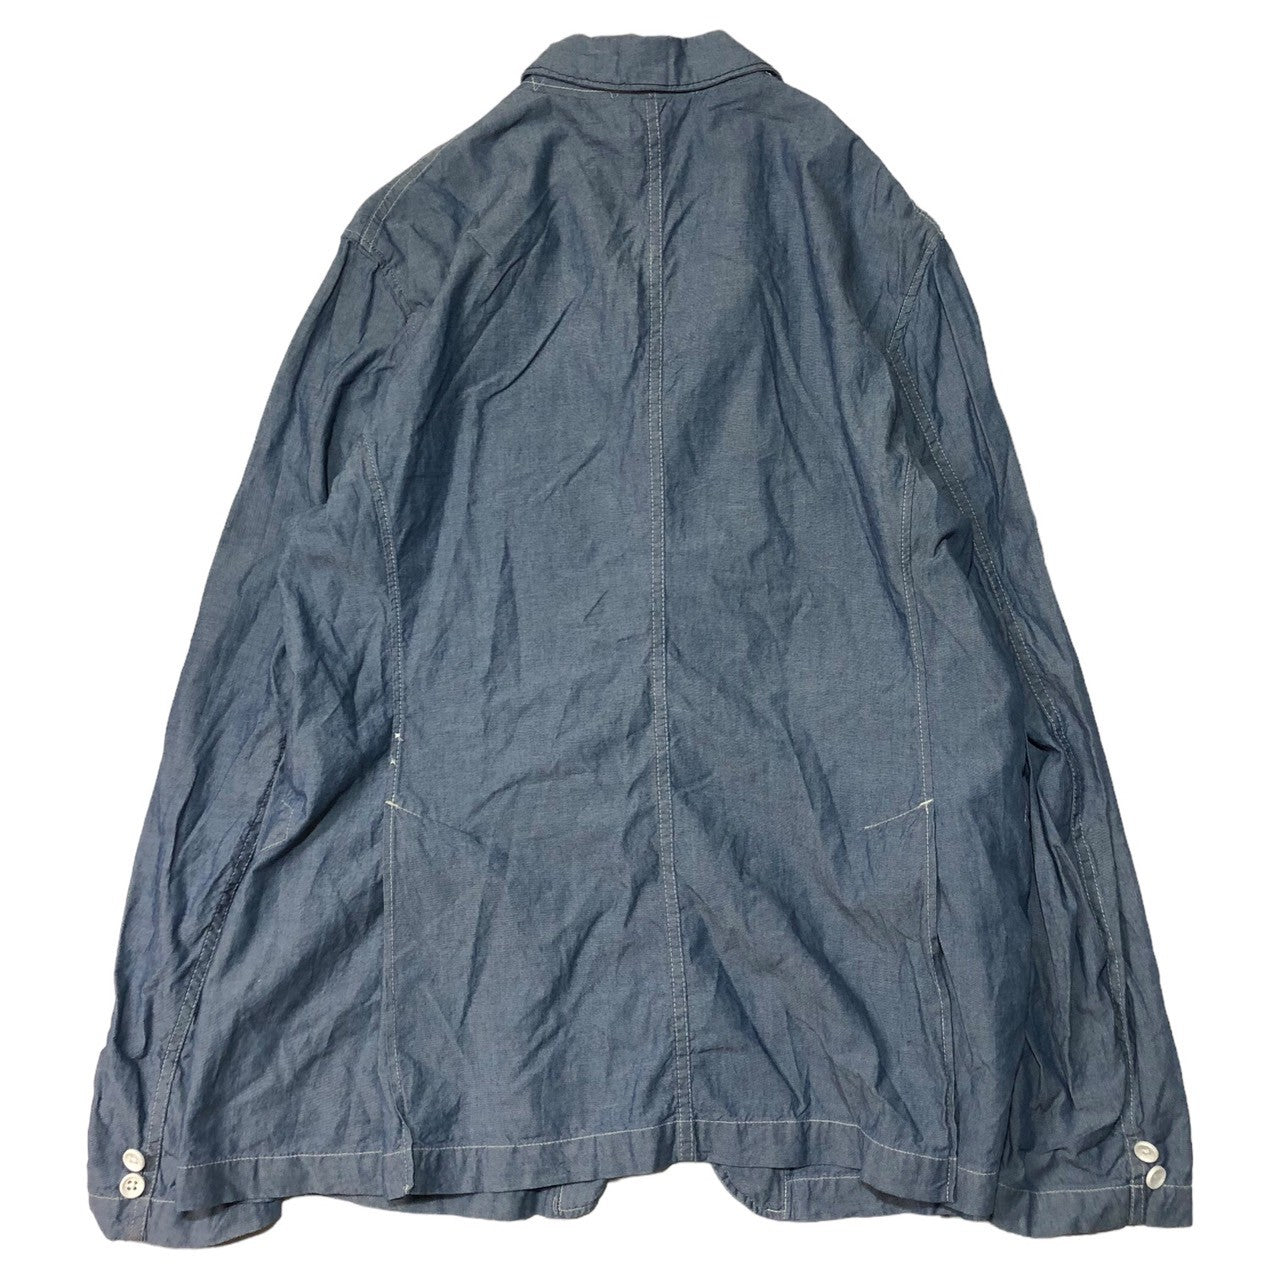 Engineered Garments(エンジニアードガーメンツ) chambray jacket シャンブレー テーラード ジャケット SIZE L ライトインディゴ